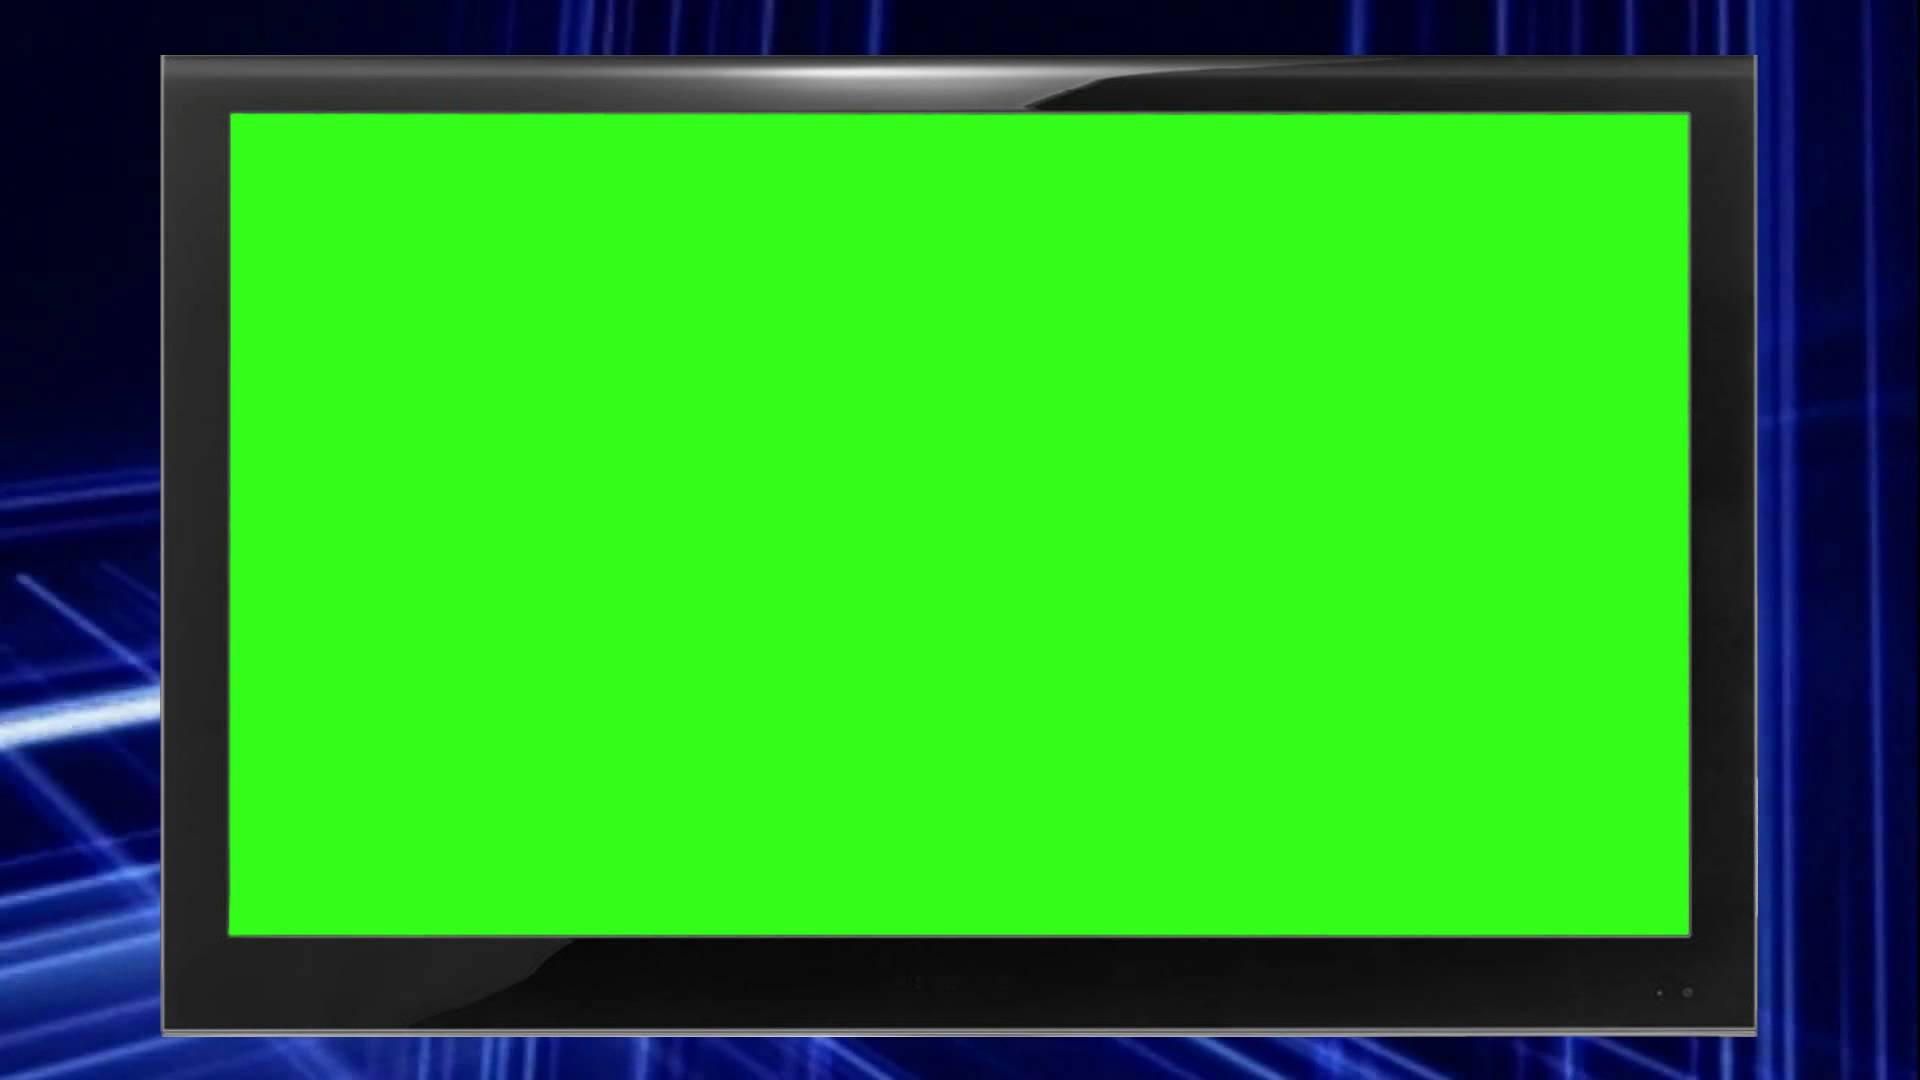 Green Screen Monitor Free background video 1080p HD: Vào thế giới màu sắc đầy mơ mộng với các video nền Green Screen Monitor miễn phí độ phân giải cao. Hình ảnh liên quan sẽ cho bạn thấy biểu tượng của hiệu ứng tuyệt vời mà bạn có thể tận dụng vào sản phẩm của mình.